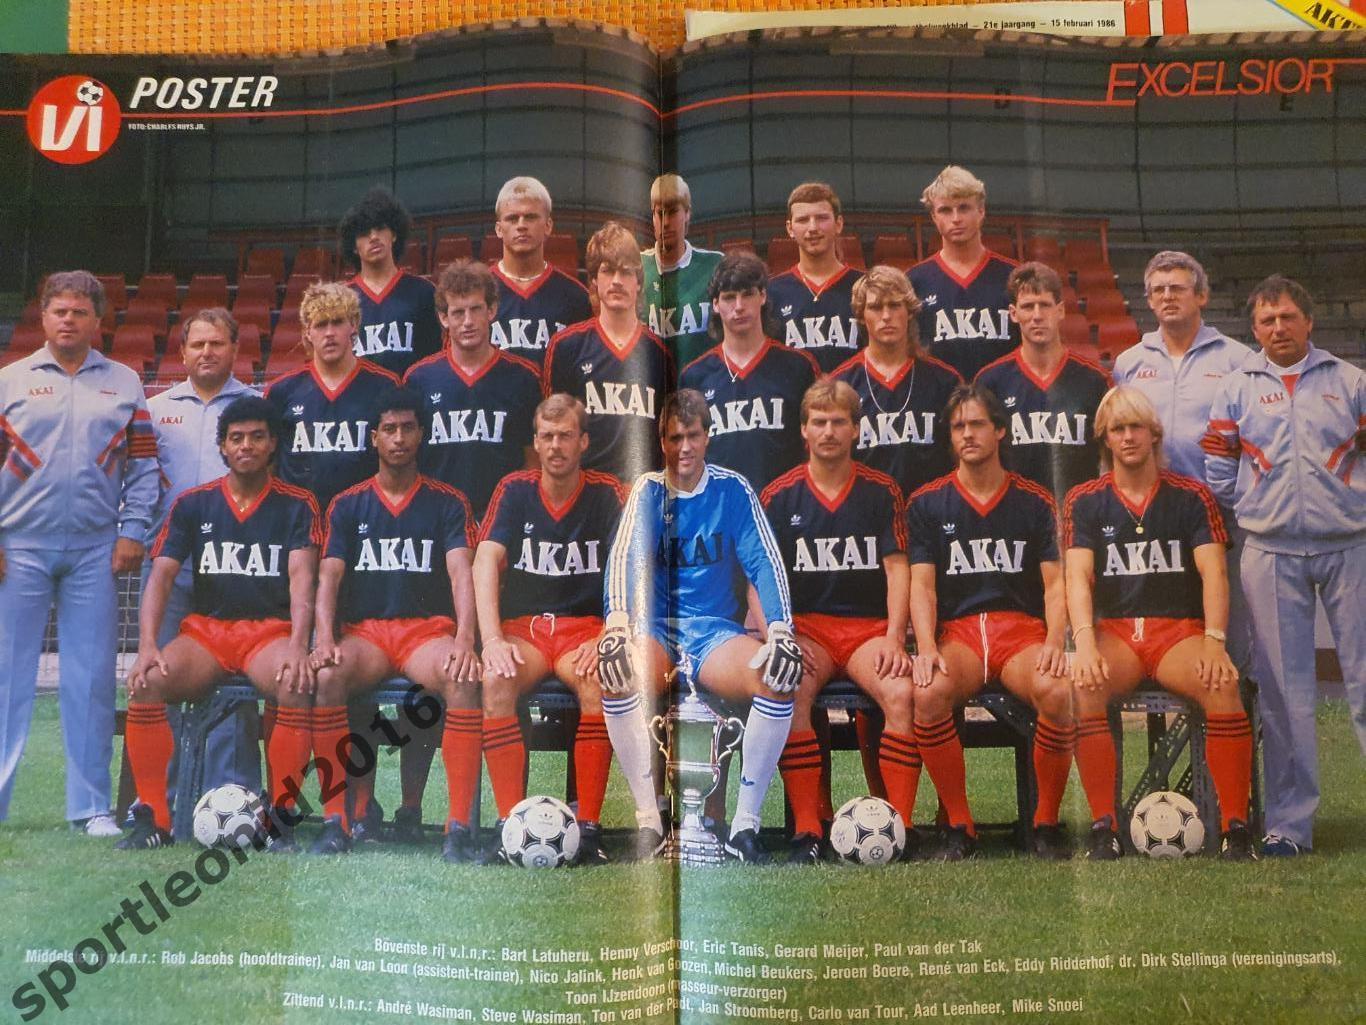 Voetbal International 1986.14 топ выпусков.В том числе итоговые к ЧМ-86.2 7